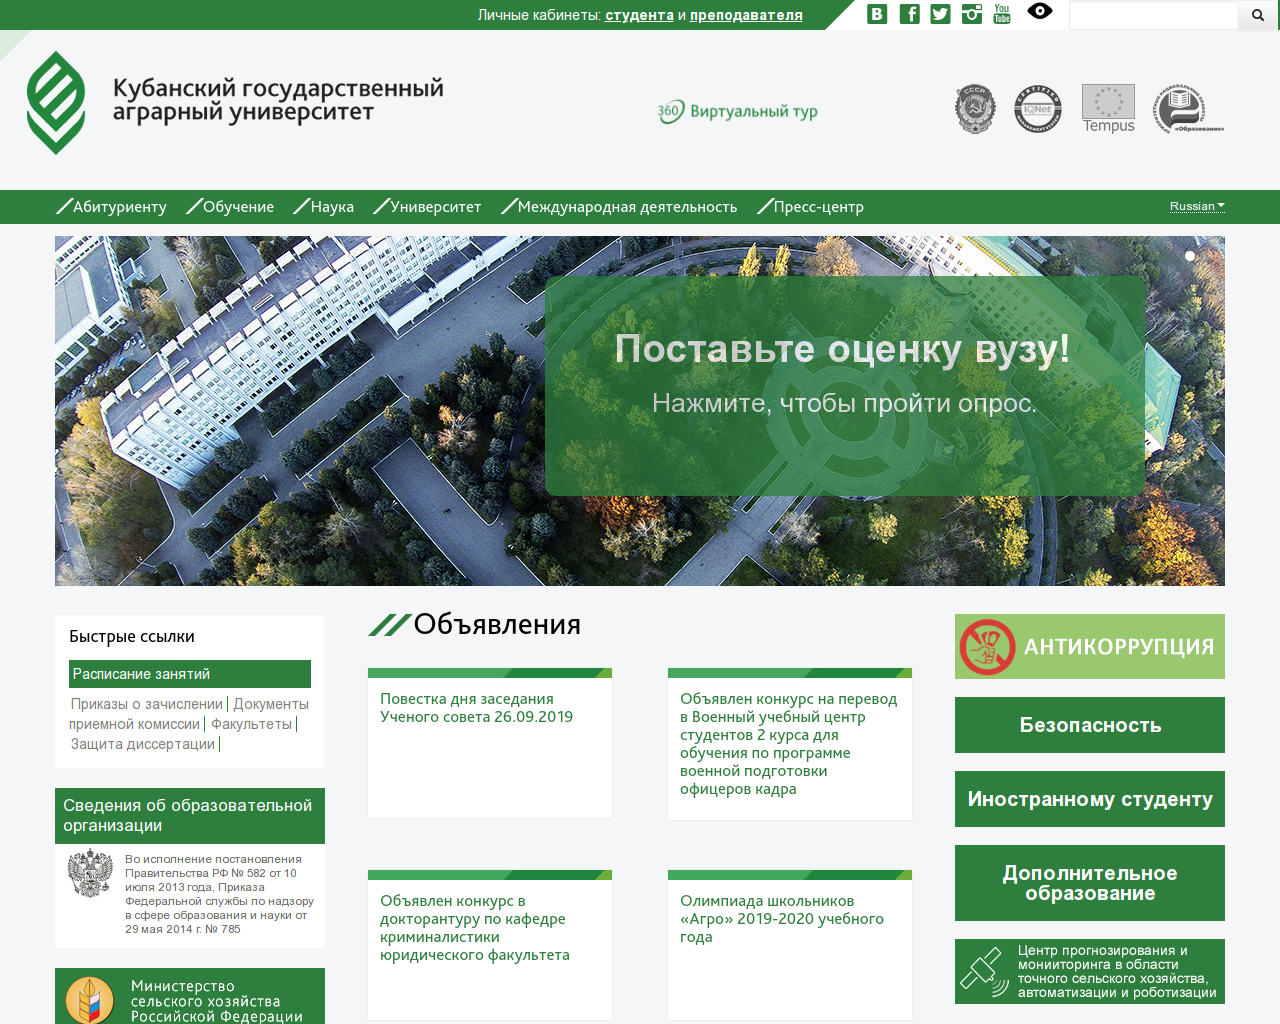 Изображение сайта kubsau.ru в разрешении 1280x1024